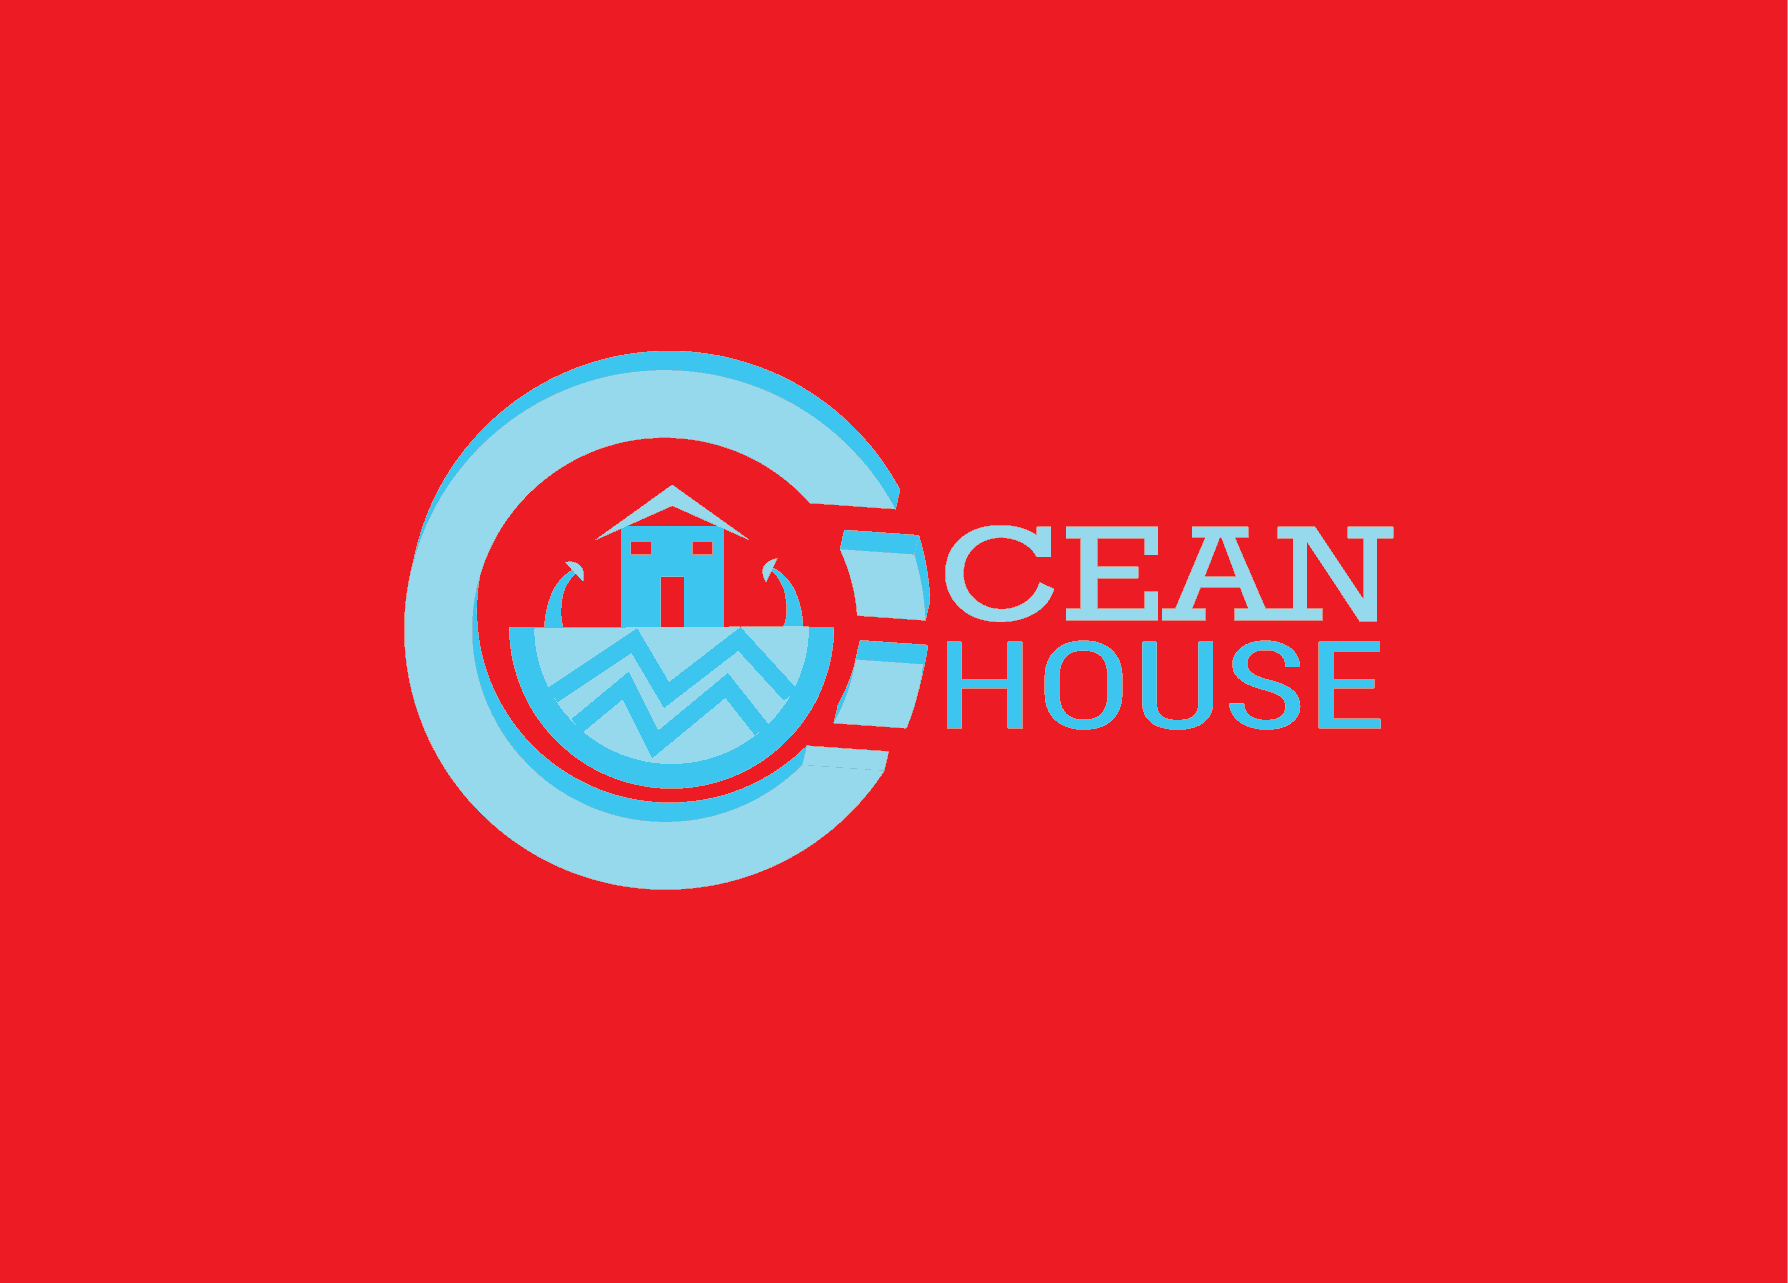 abstract Ocean House logo design